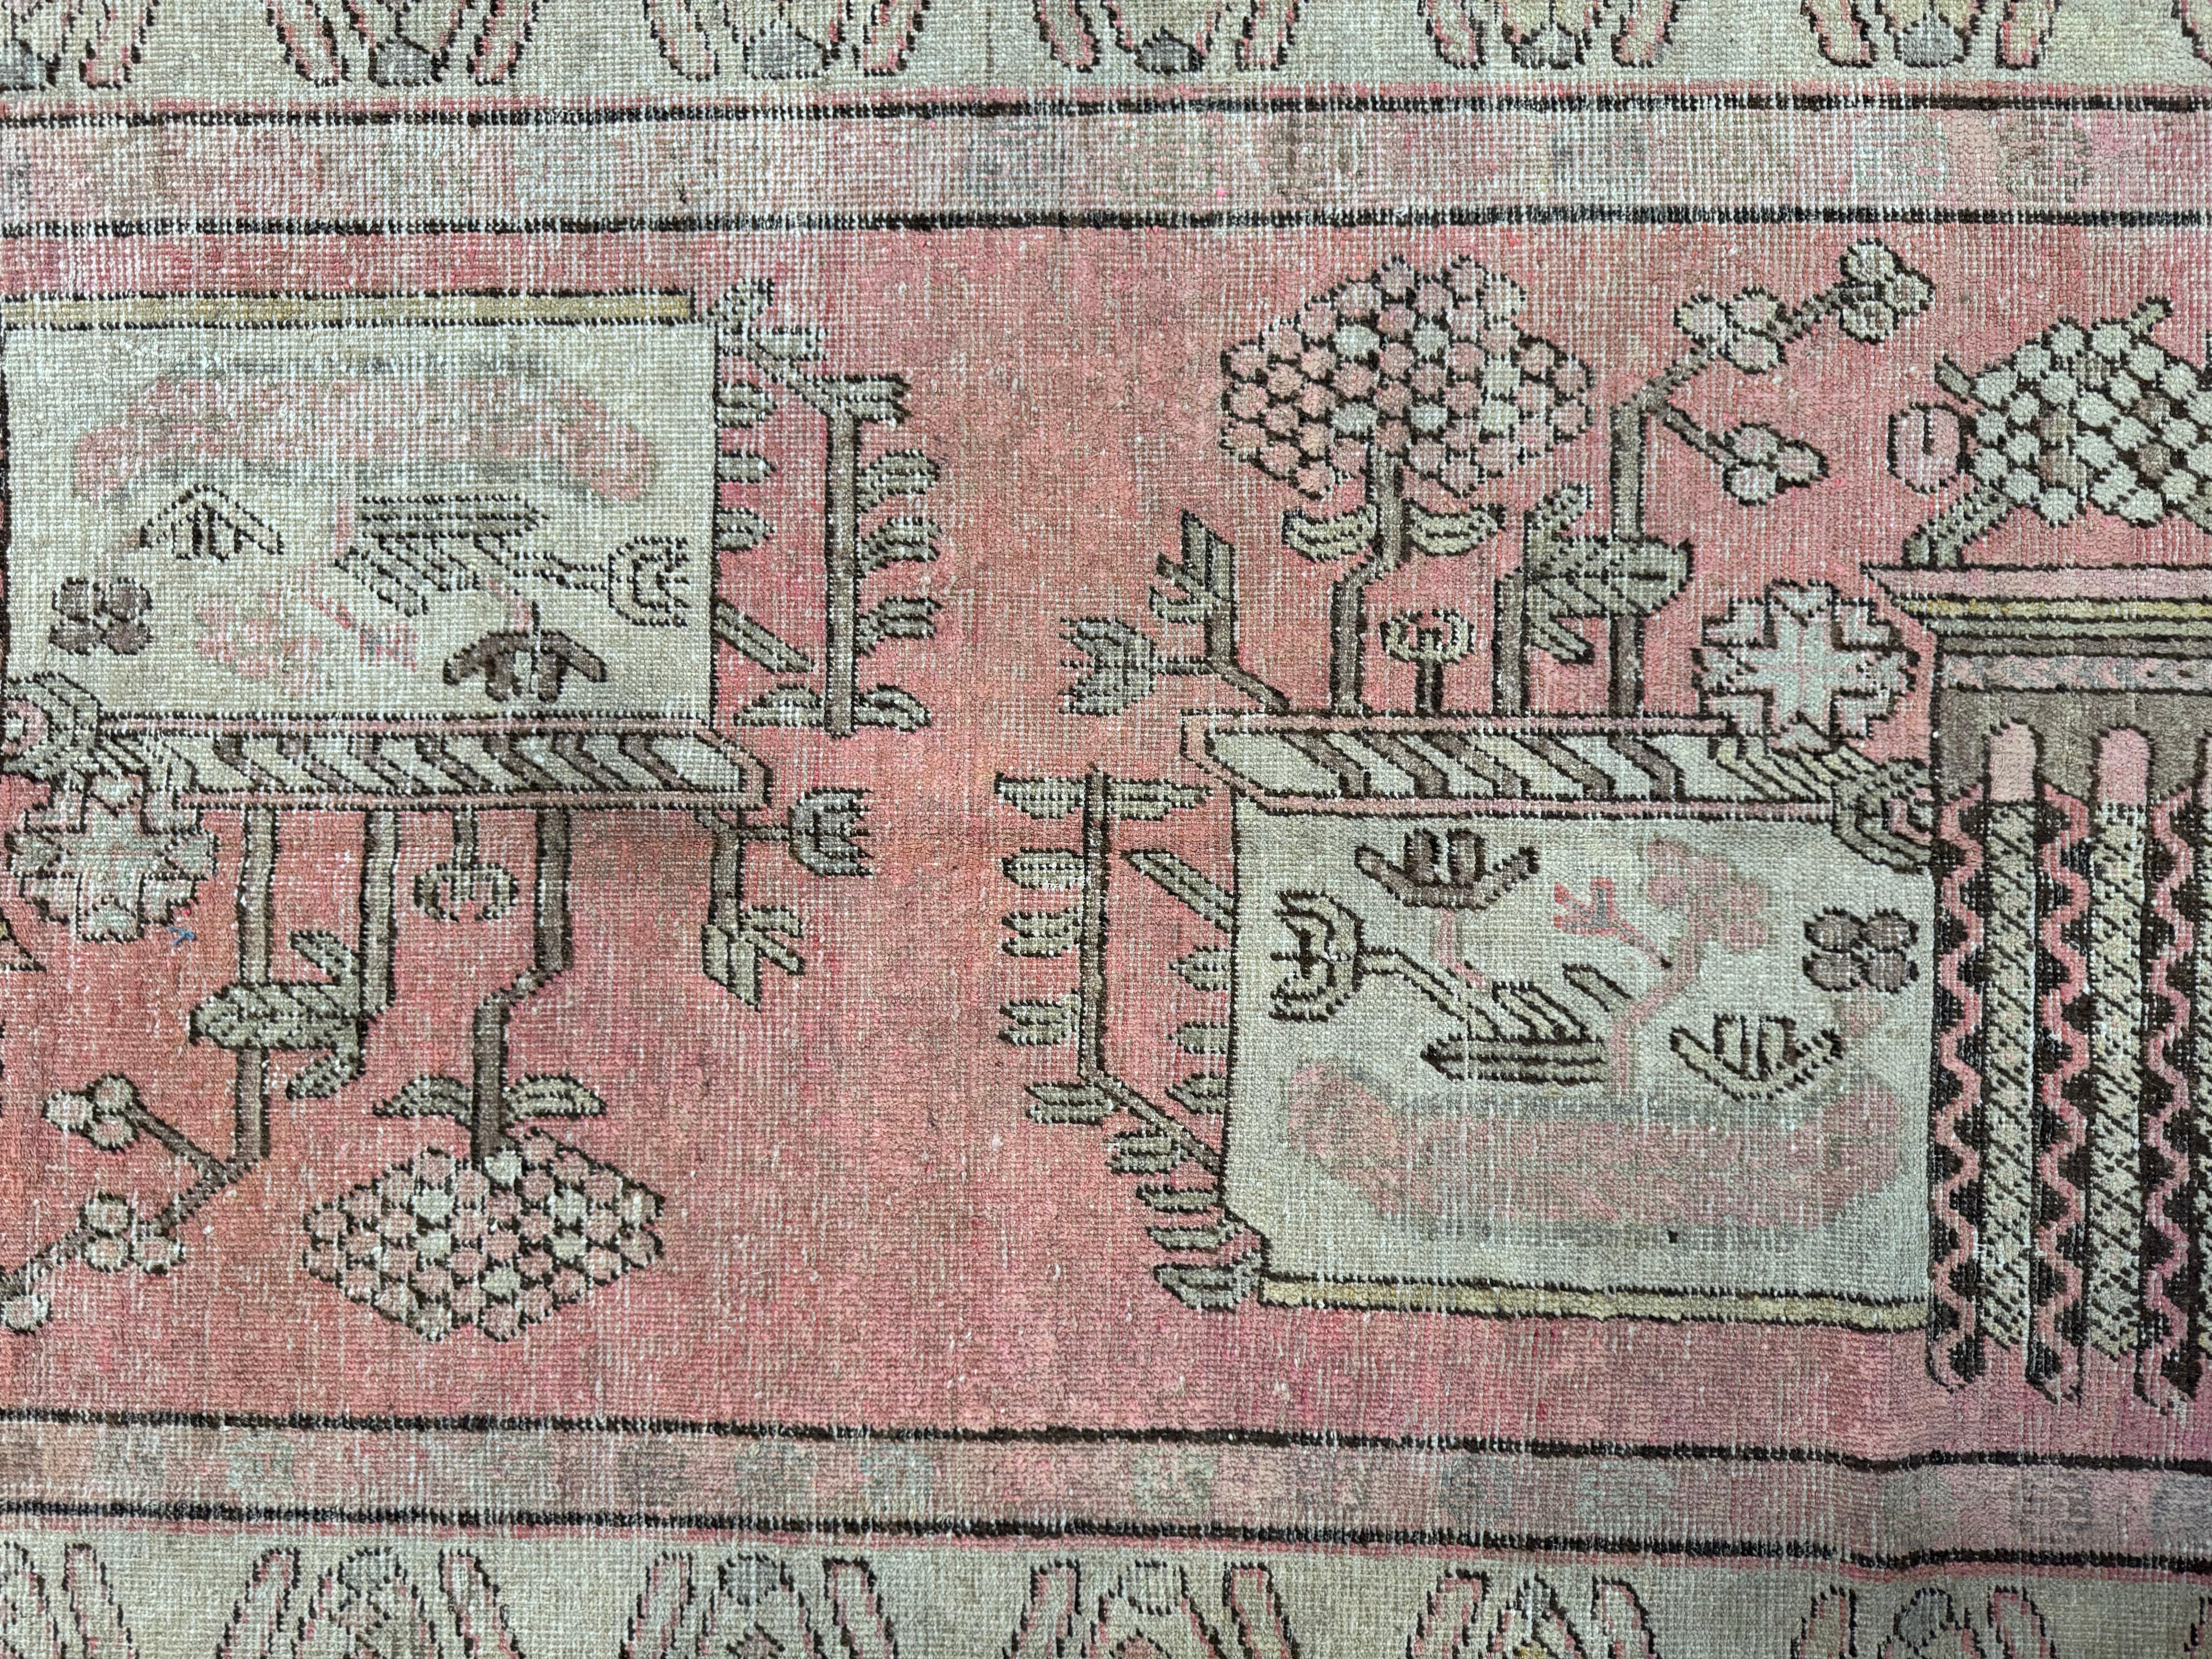 Enrichissez votre décor avec ce tapis Samarkand antique du 19e siècle, d'une taille de 7,9' x 4,2'. Ses motifs captivants et ses teintes riches ajoutent une élégance intemporelle à toute maison américaine, mêlant allure classique et sophistication